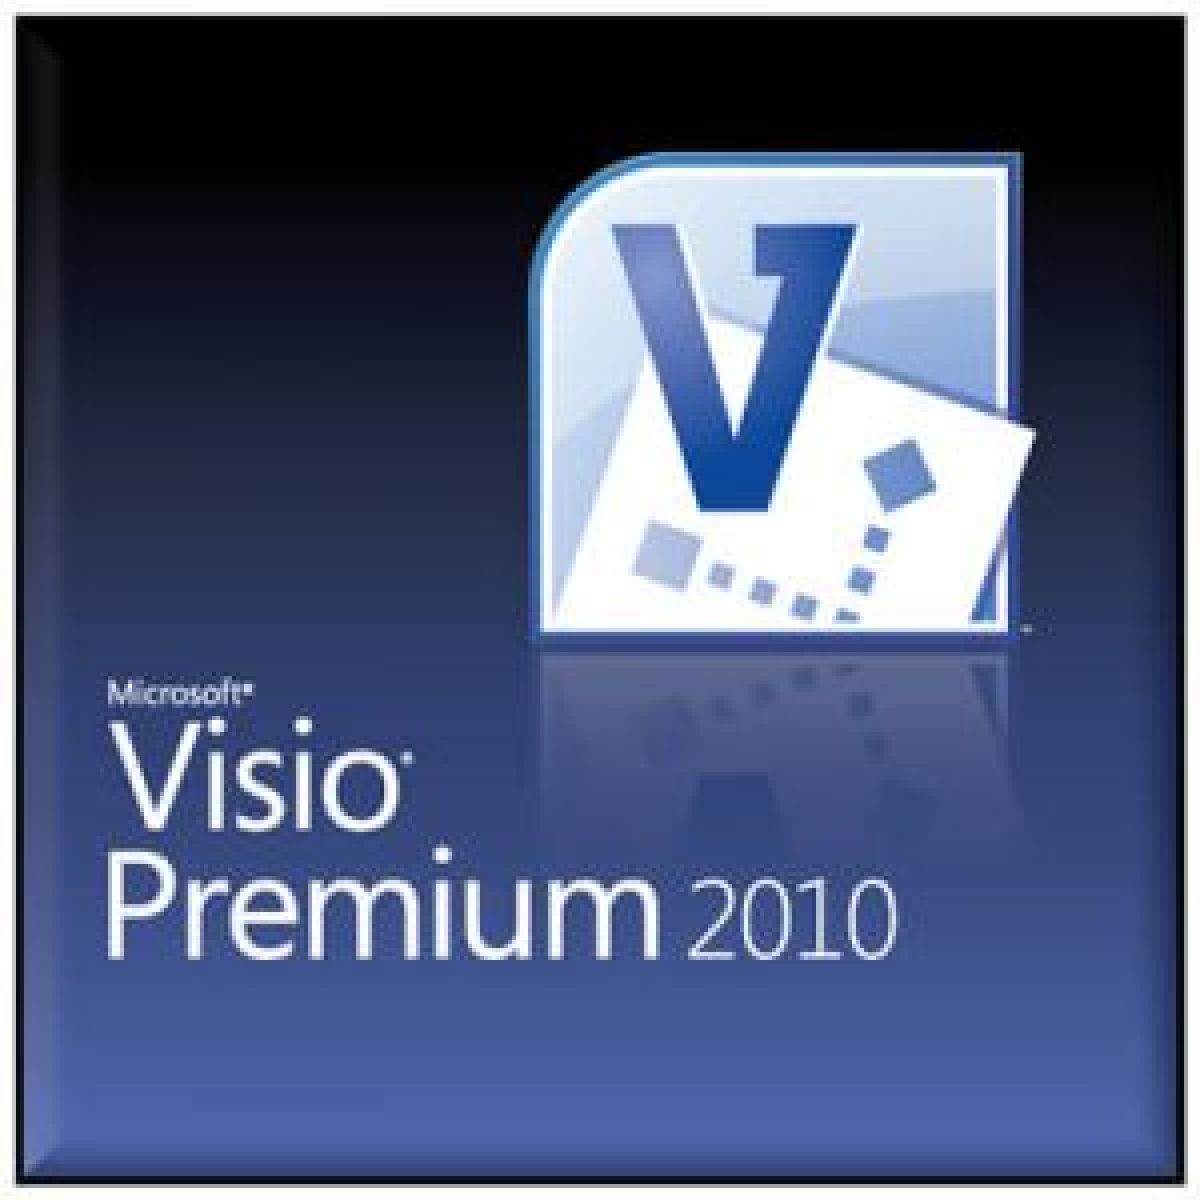 Office Visio Premium 2010 buy online